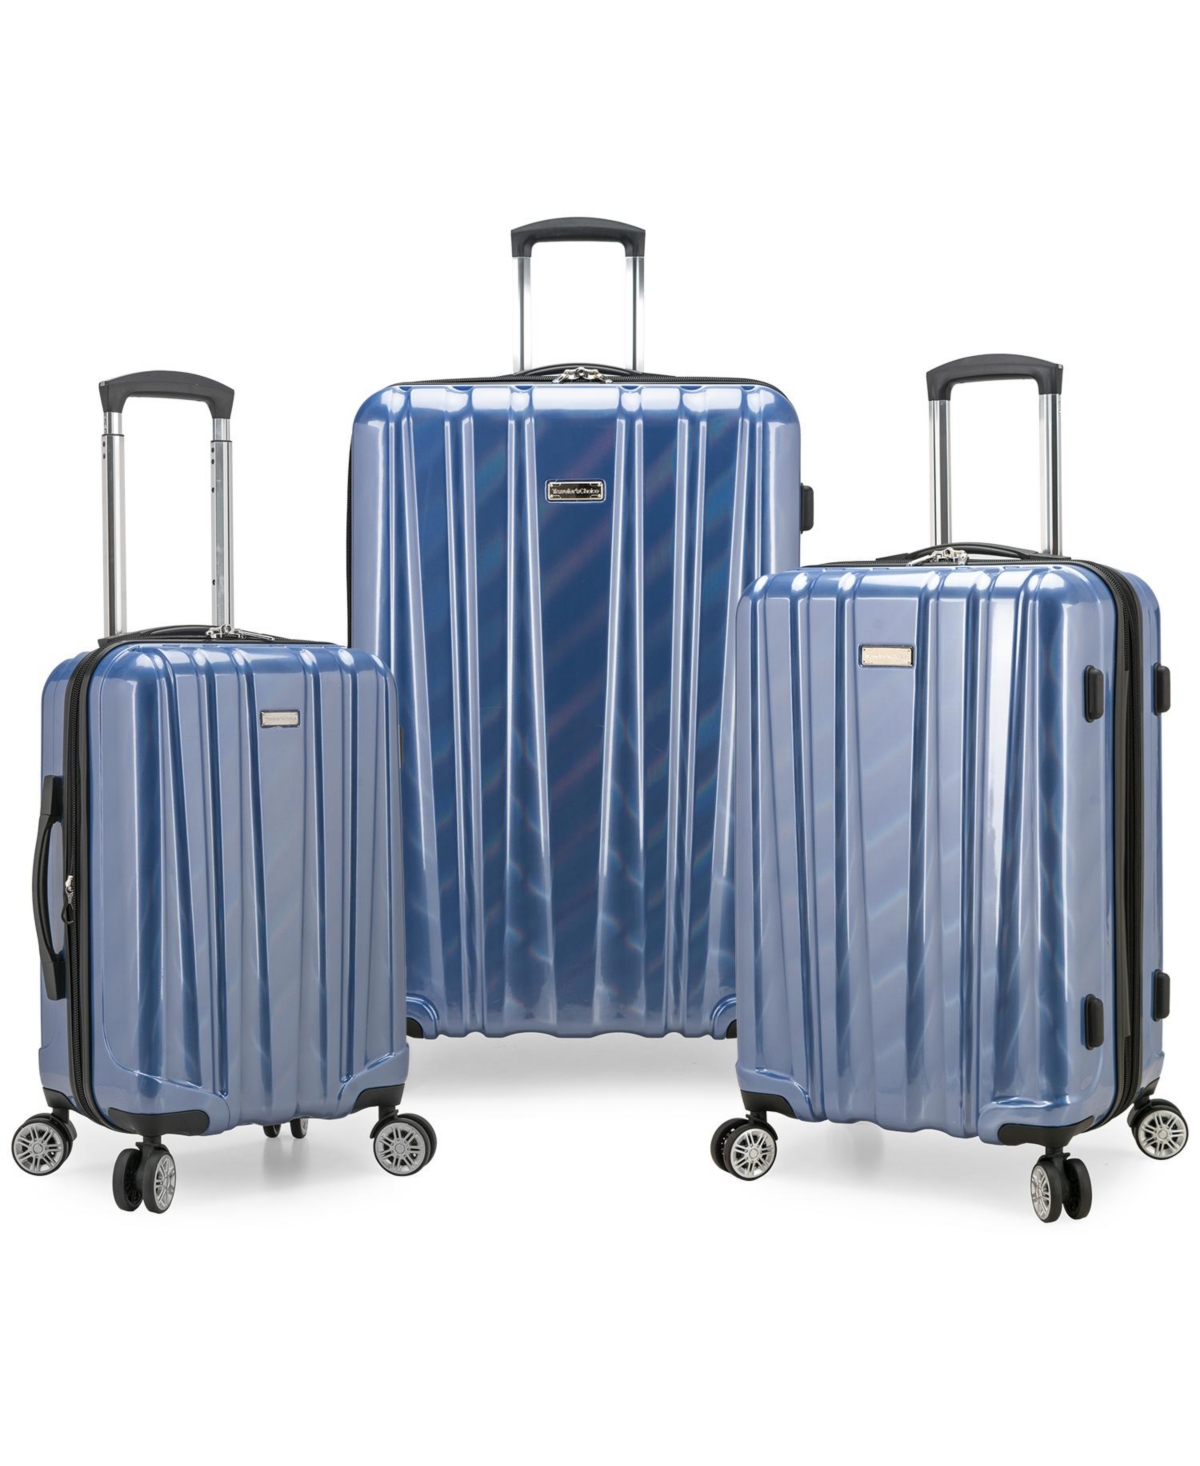 Ruma Ii 3-Pc. Hardside Luggage Set - Laser Blue